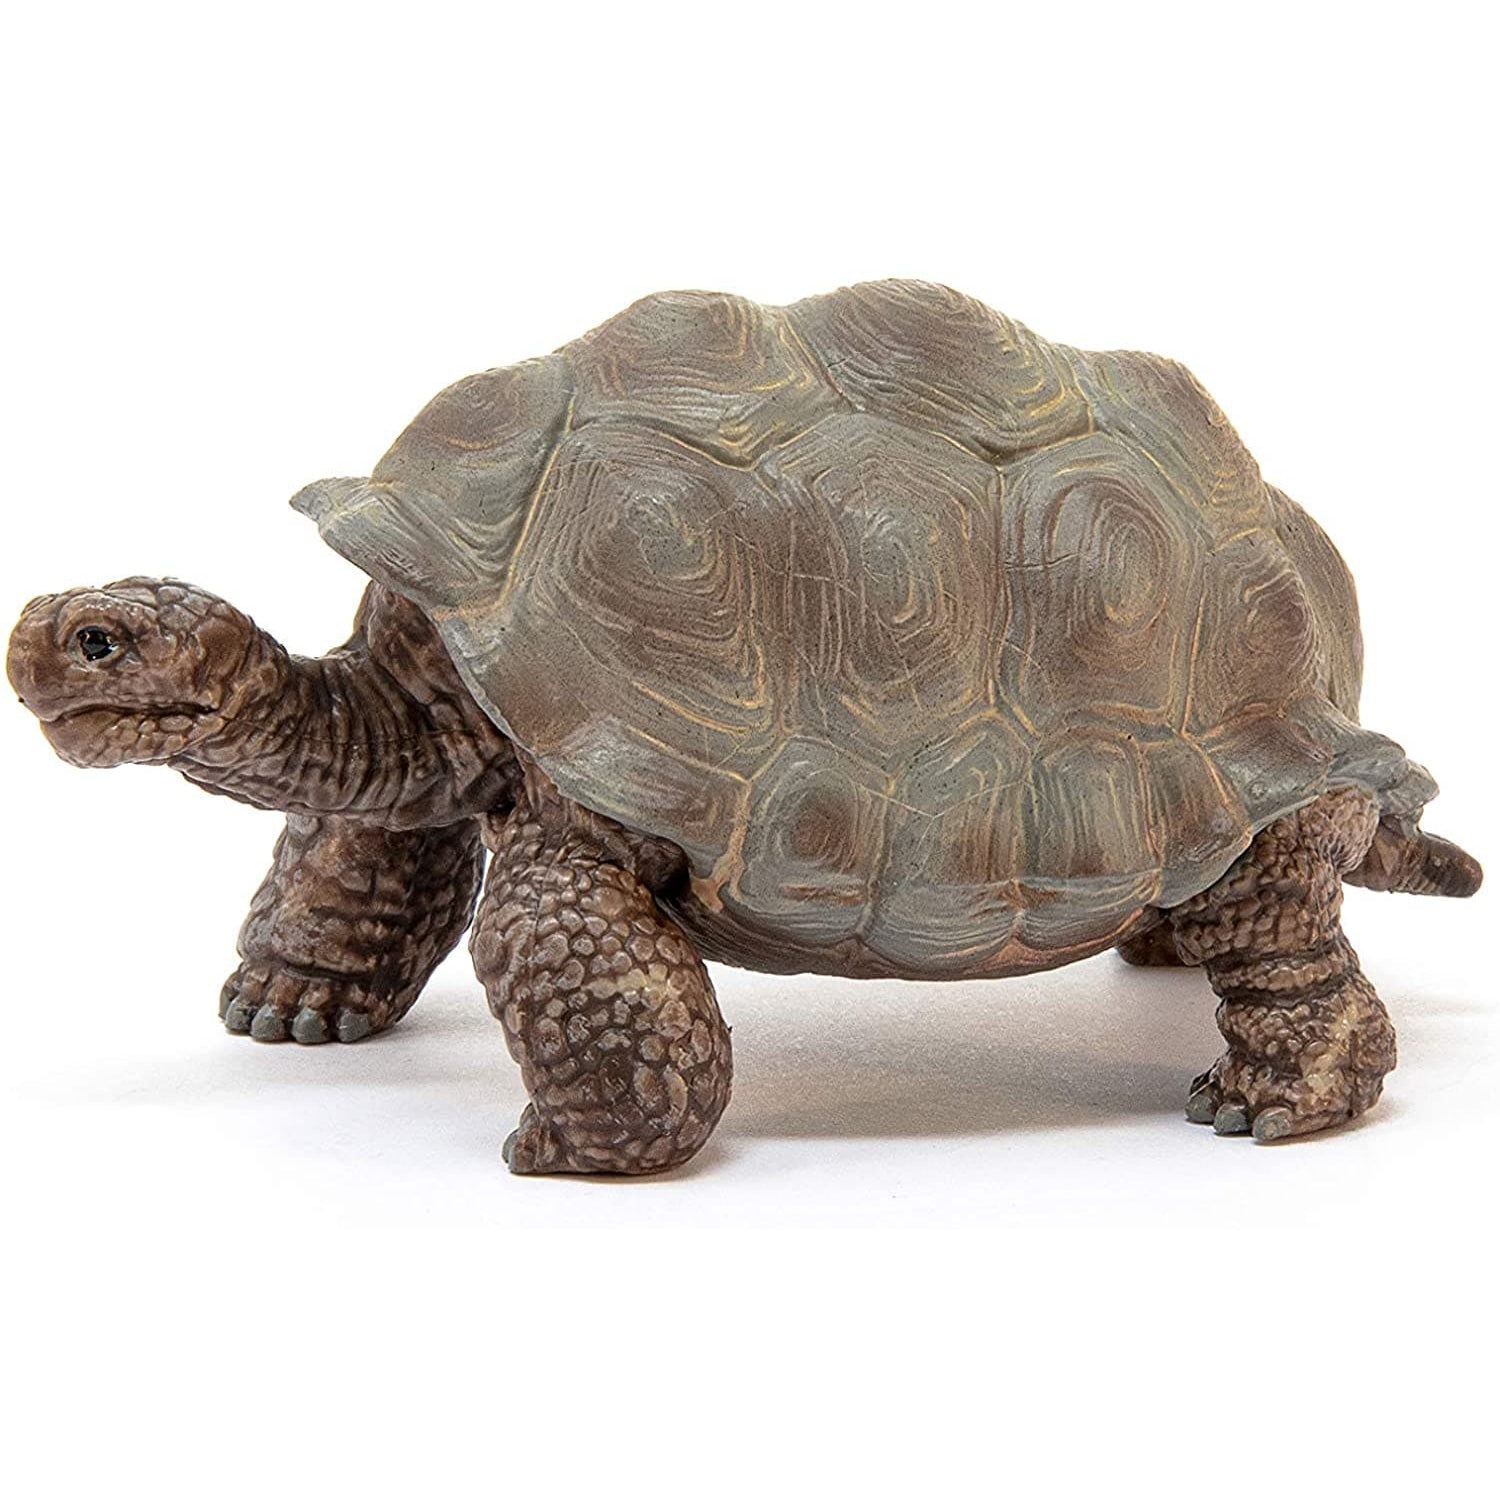 Schleich-Giant Tortoise-14824-Legacy Toys